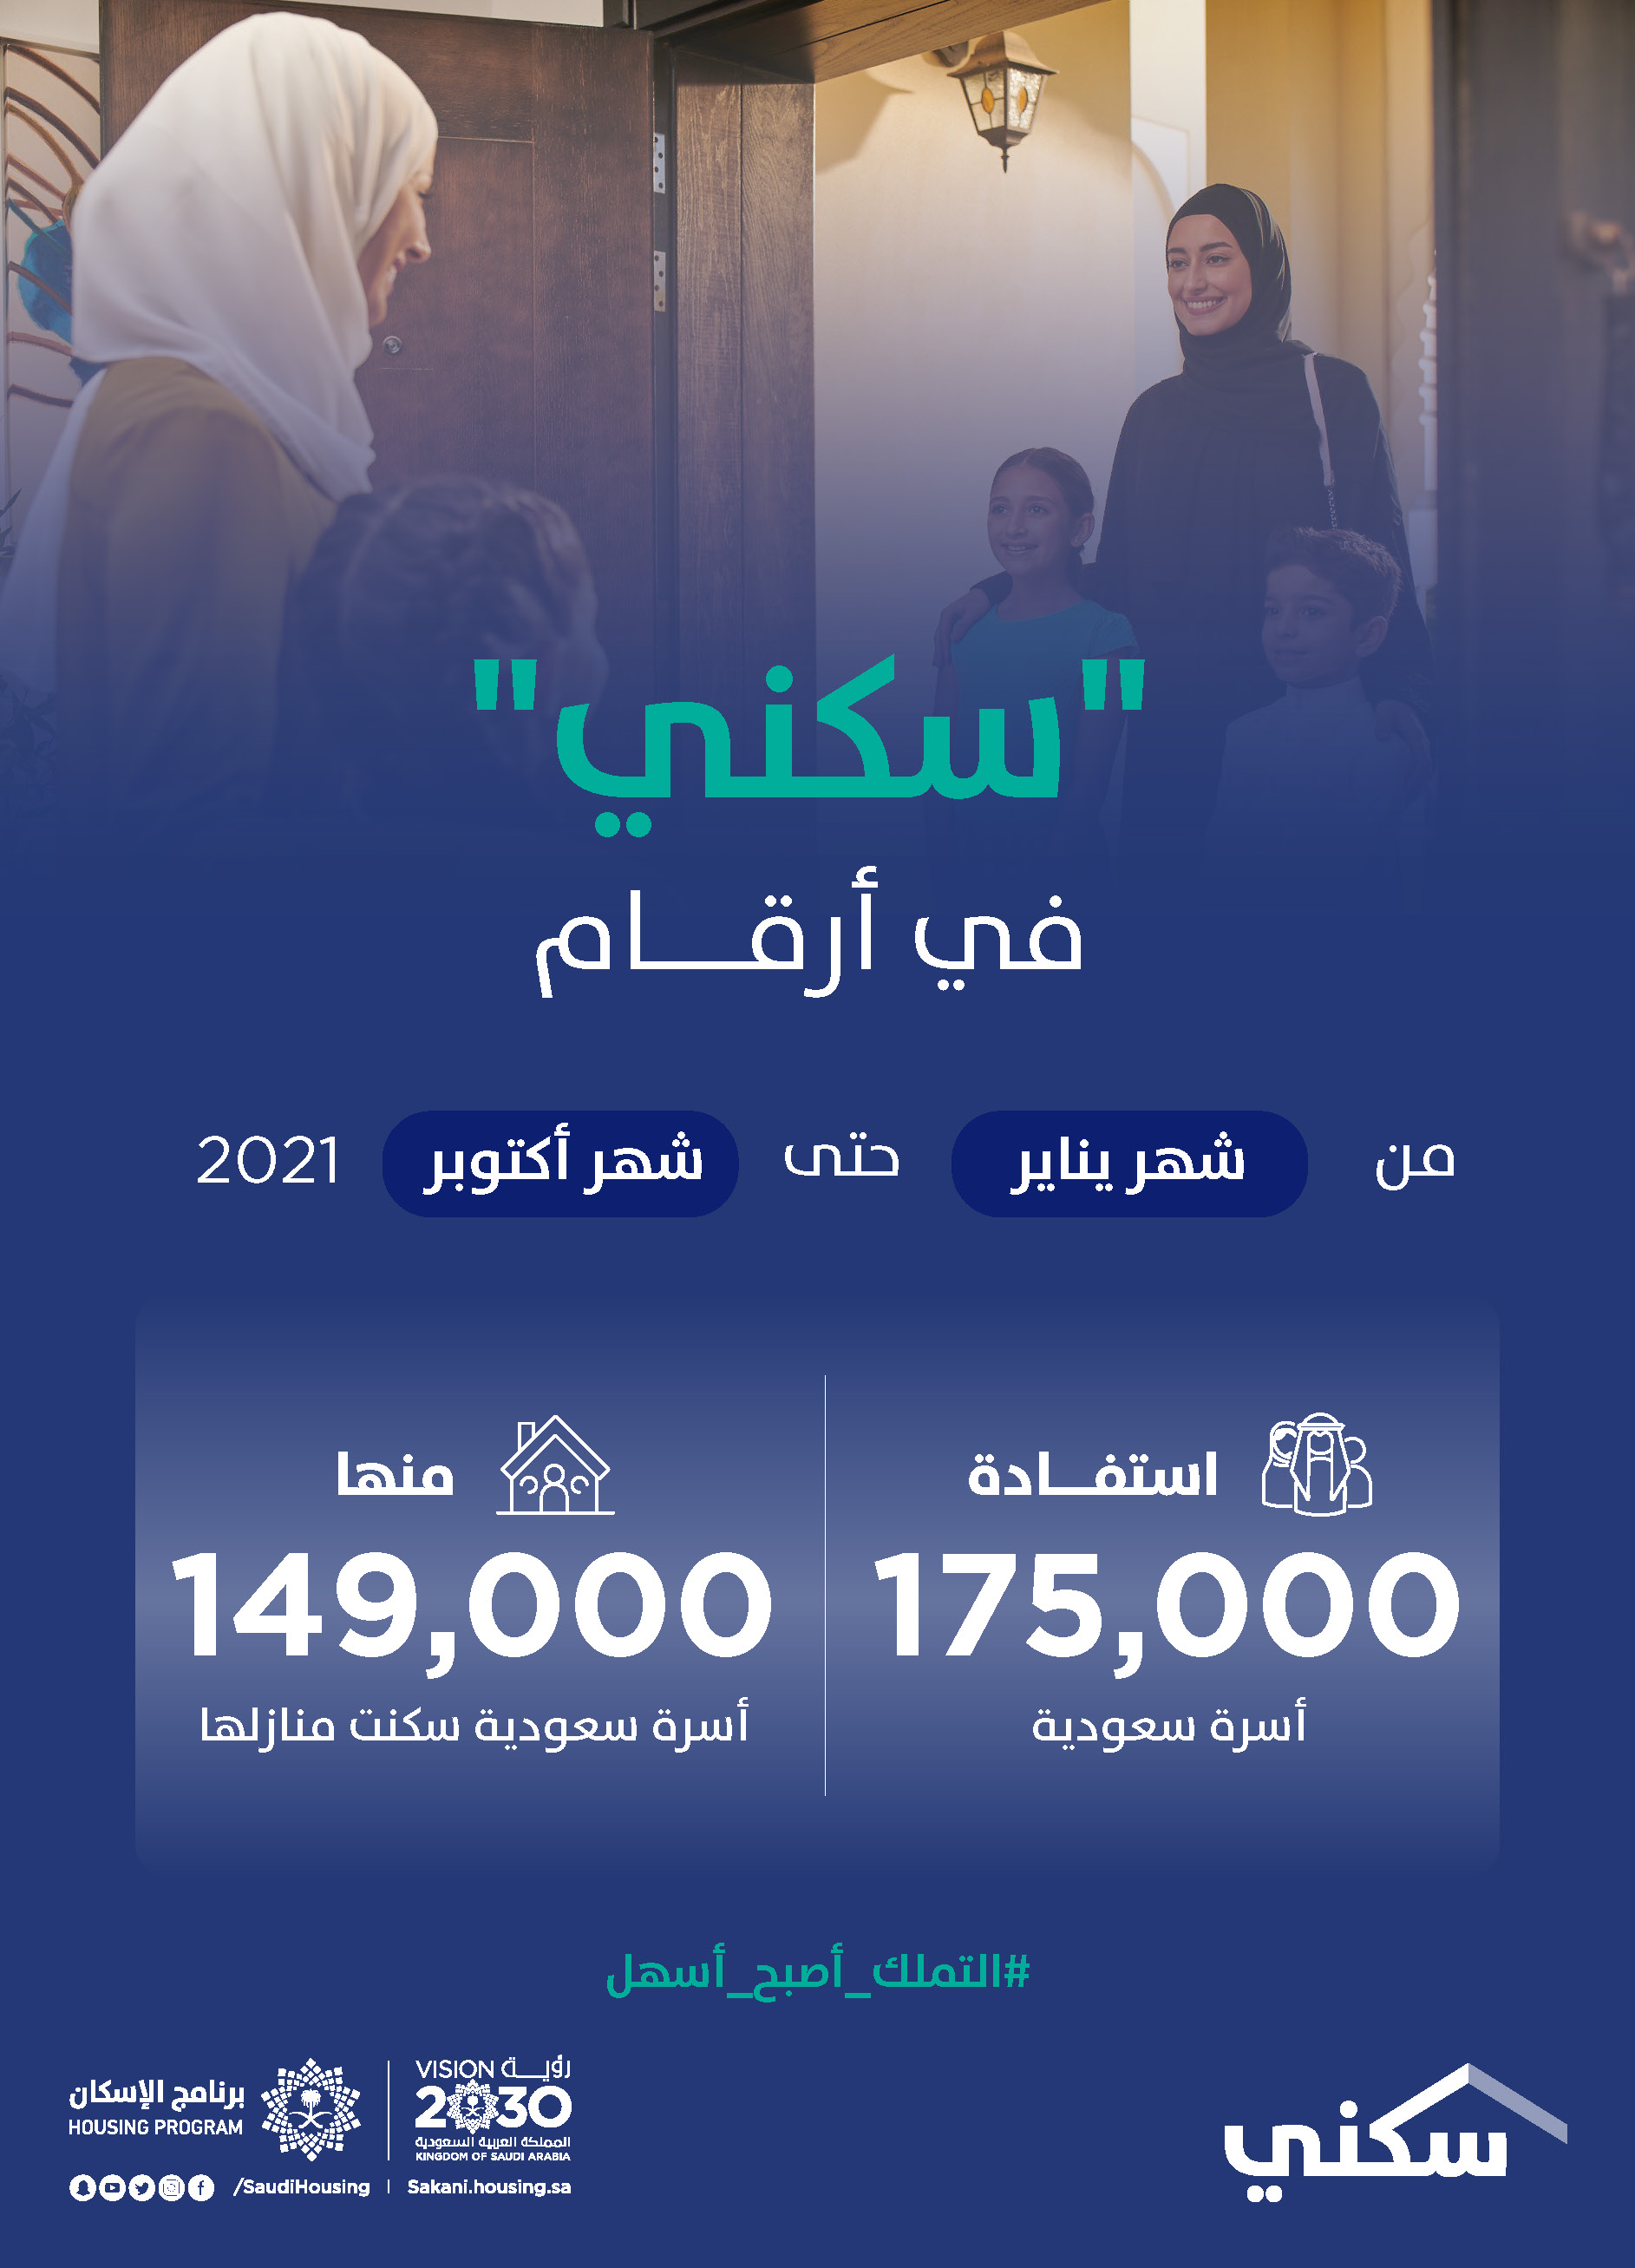 "سكني": استفادة 175 ألف أسرة منها 149 ألف سكنت منازلها خلال 10 أشهر